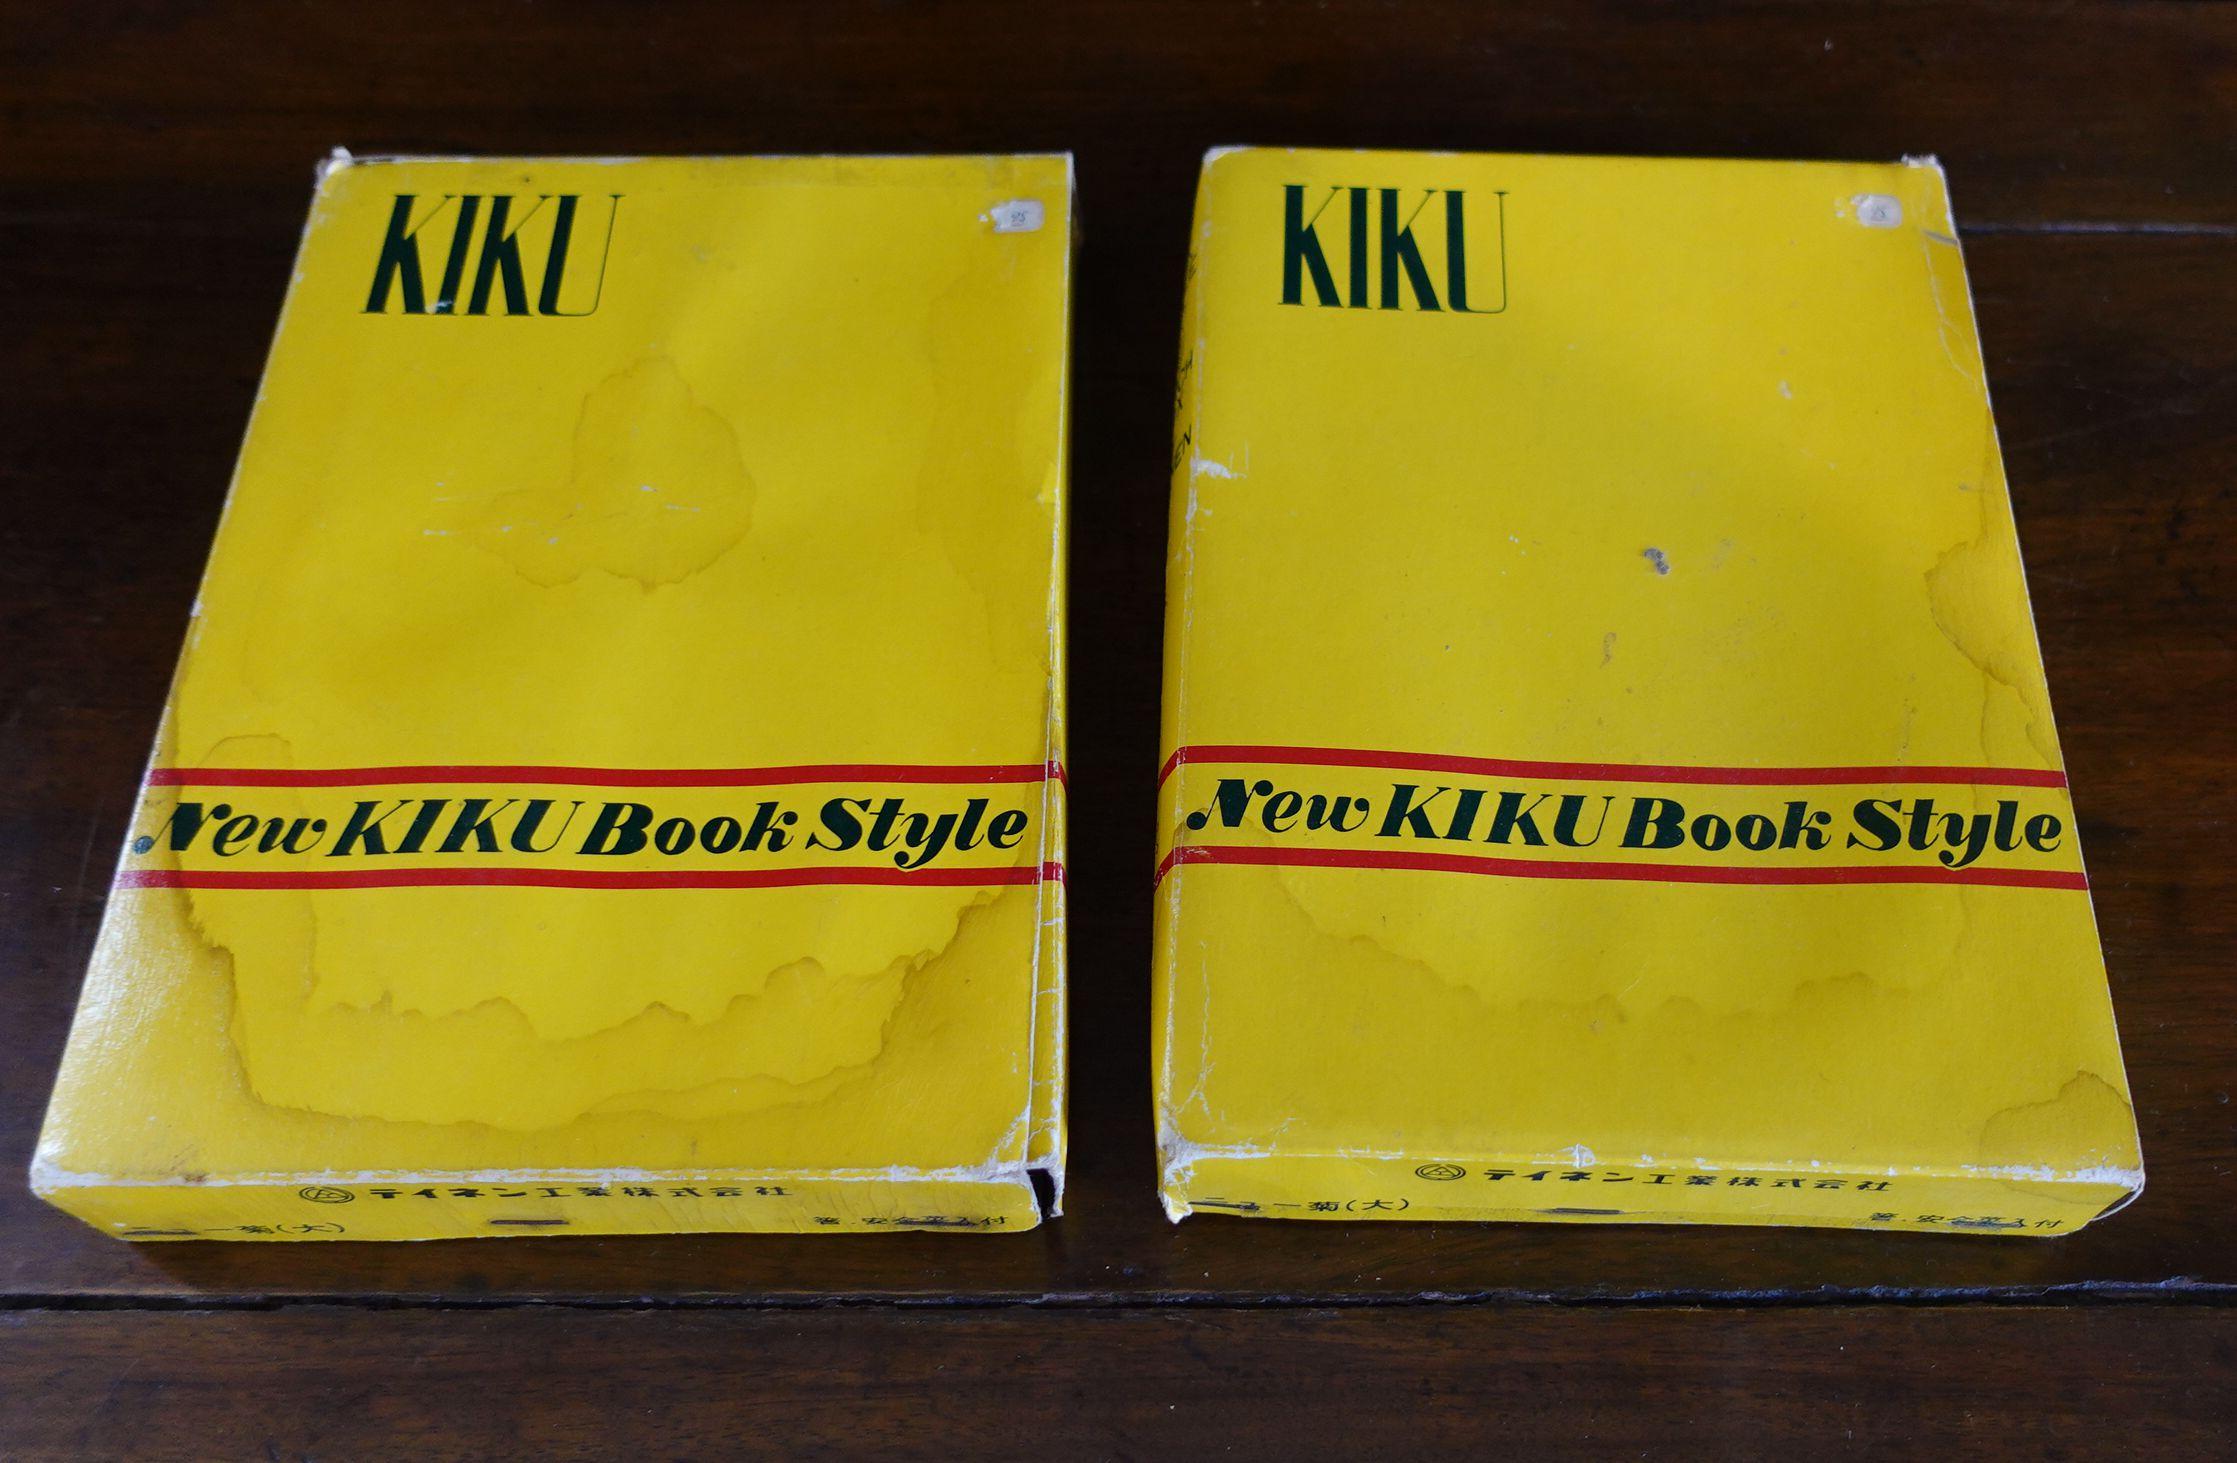 Deux boîtes à lunch japonaises à l'ancienne de type Kiku - style livre, par Teinen.
Le vieux souvenir après la Seconde Guerre mondiale à l'époque de l'école au Japon.
Une merveilleuse conception de la Bento Box pour inclure la boîte de riz